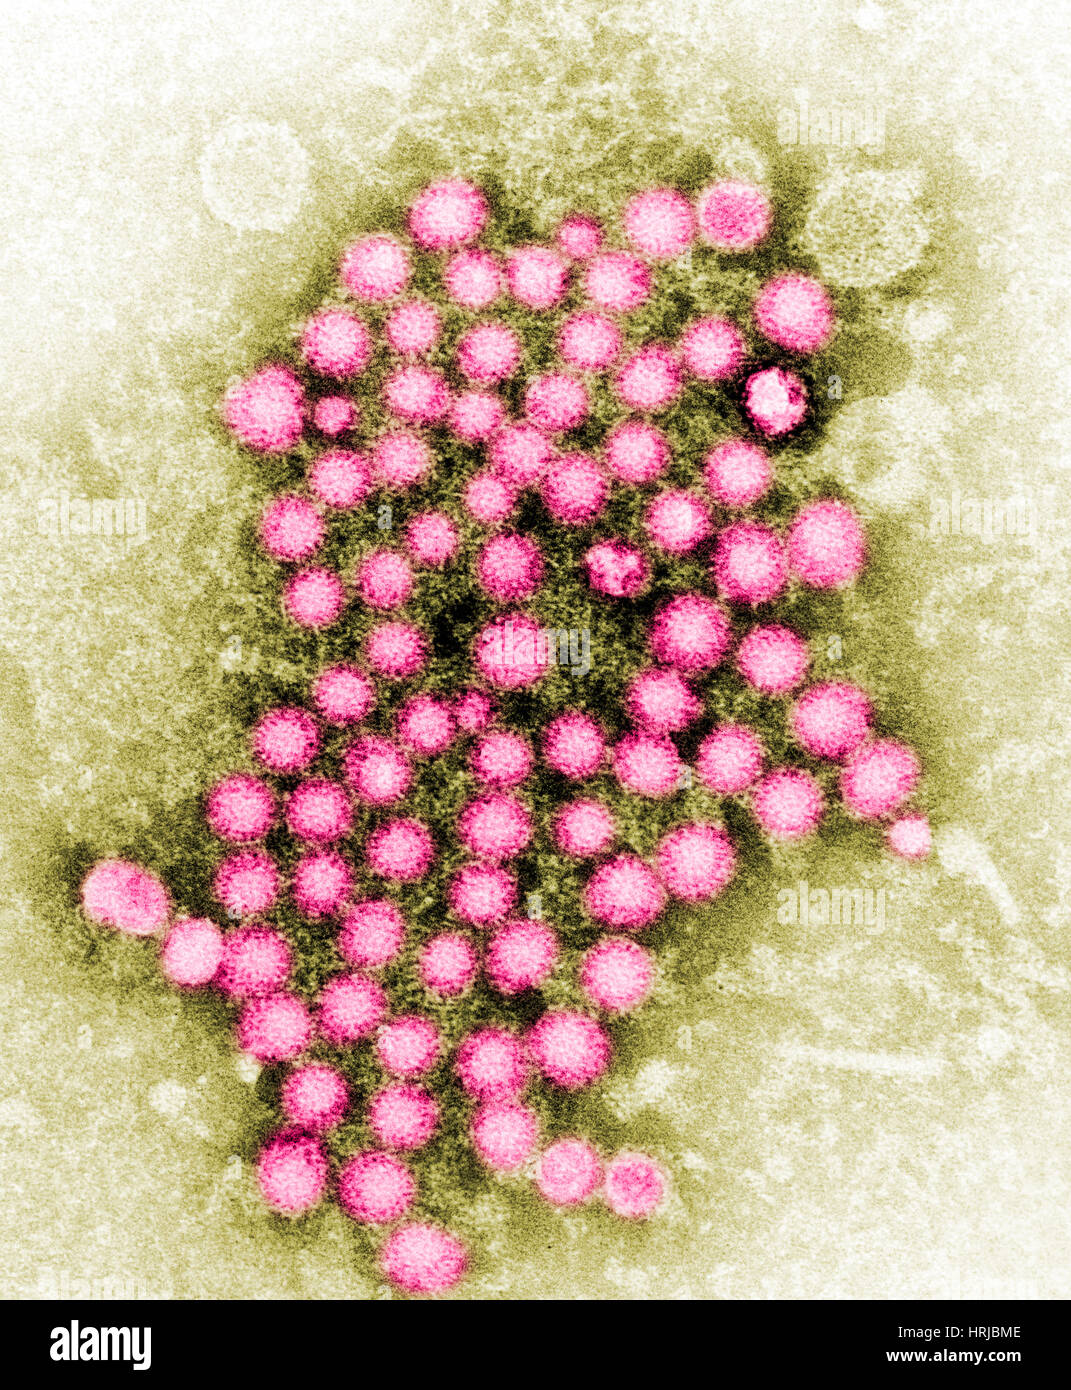 Virus de la hepatitis, cepa desconocida, TEM Foto de stock